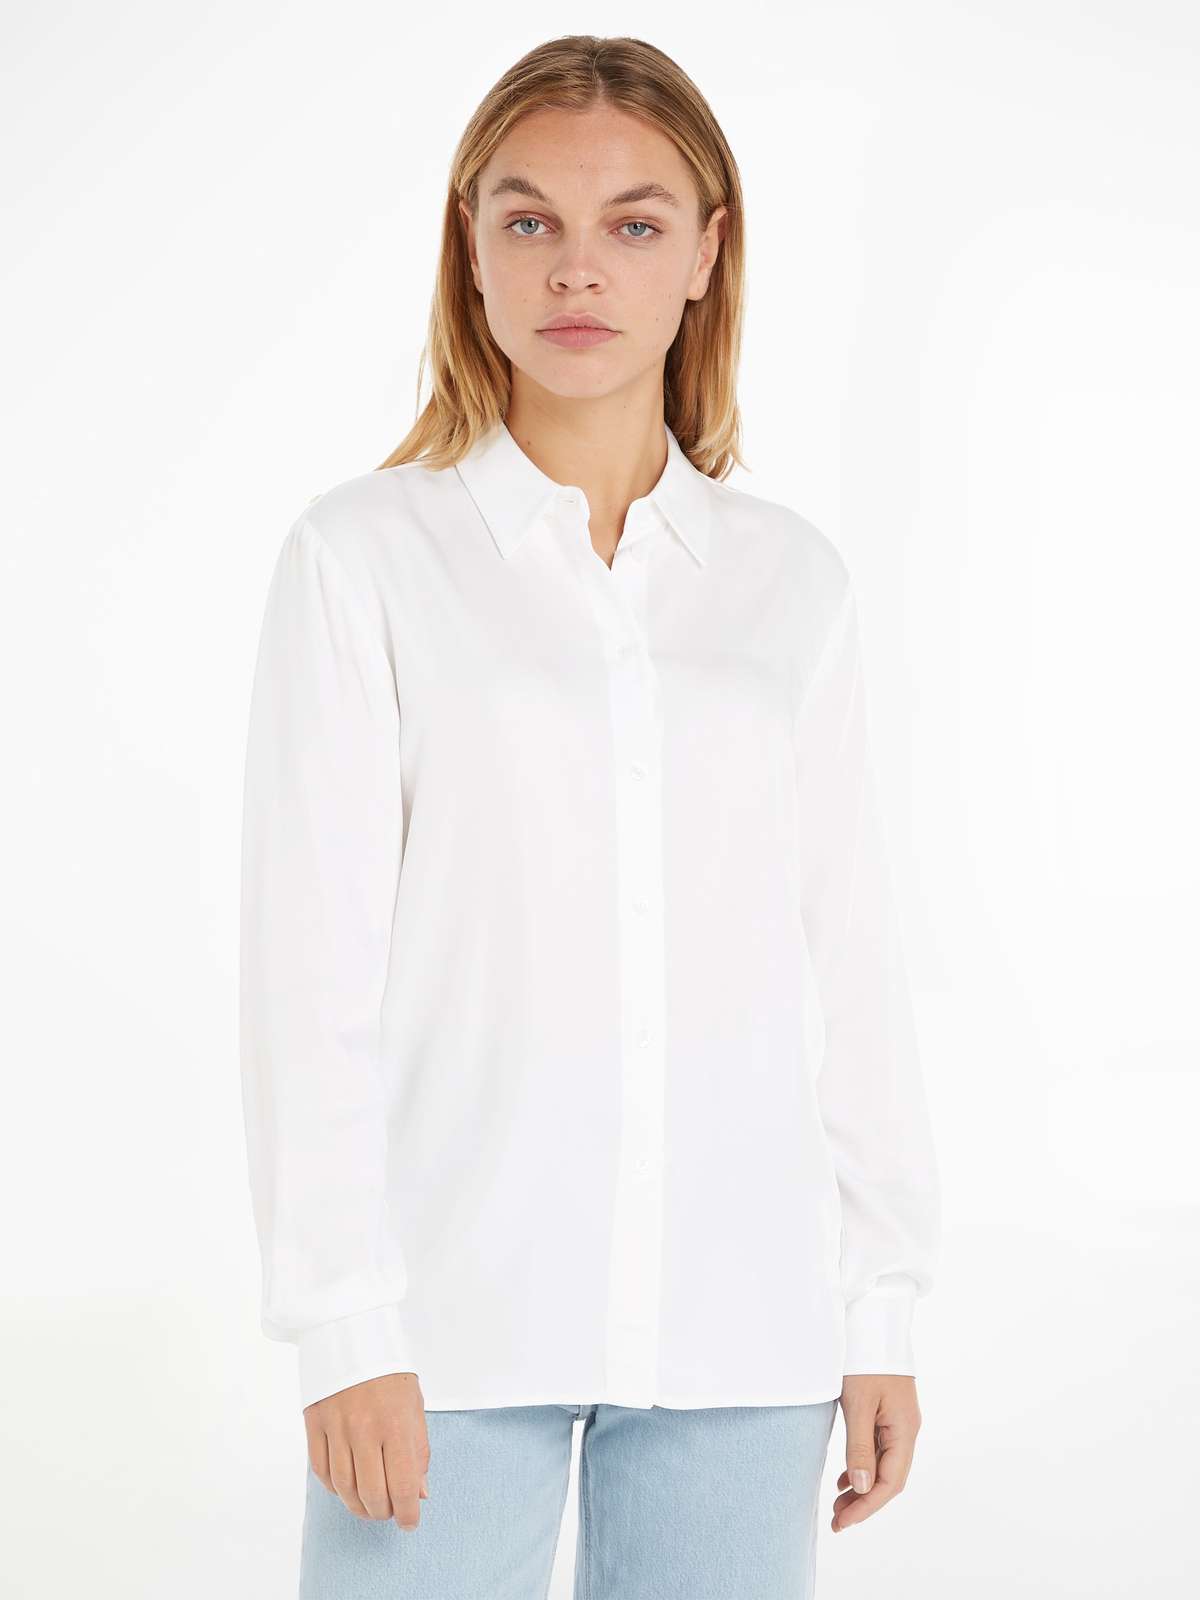 Блузка-рубашка с тонкой биркой на вырезе сзади.